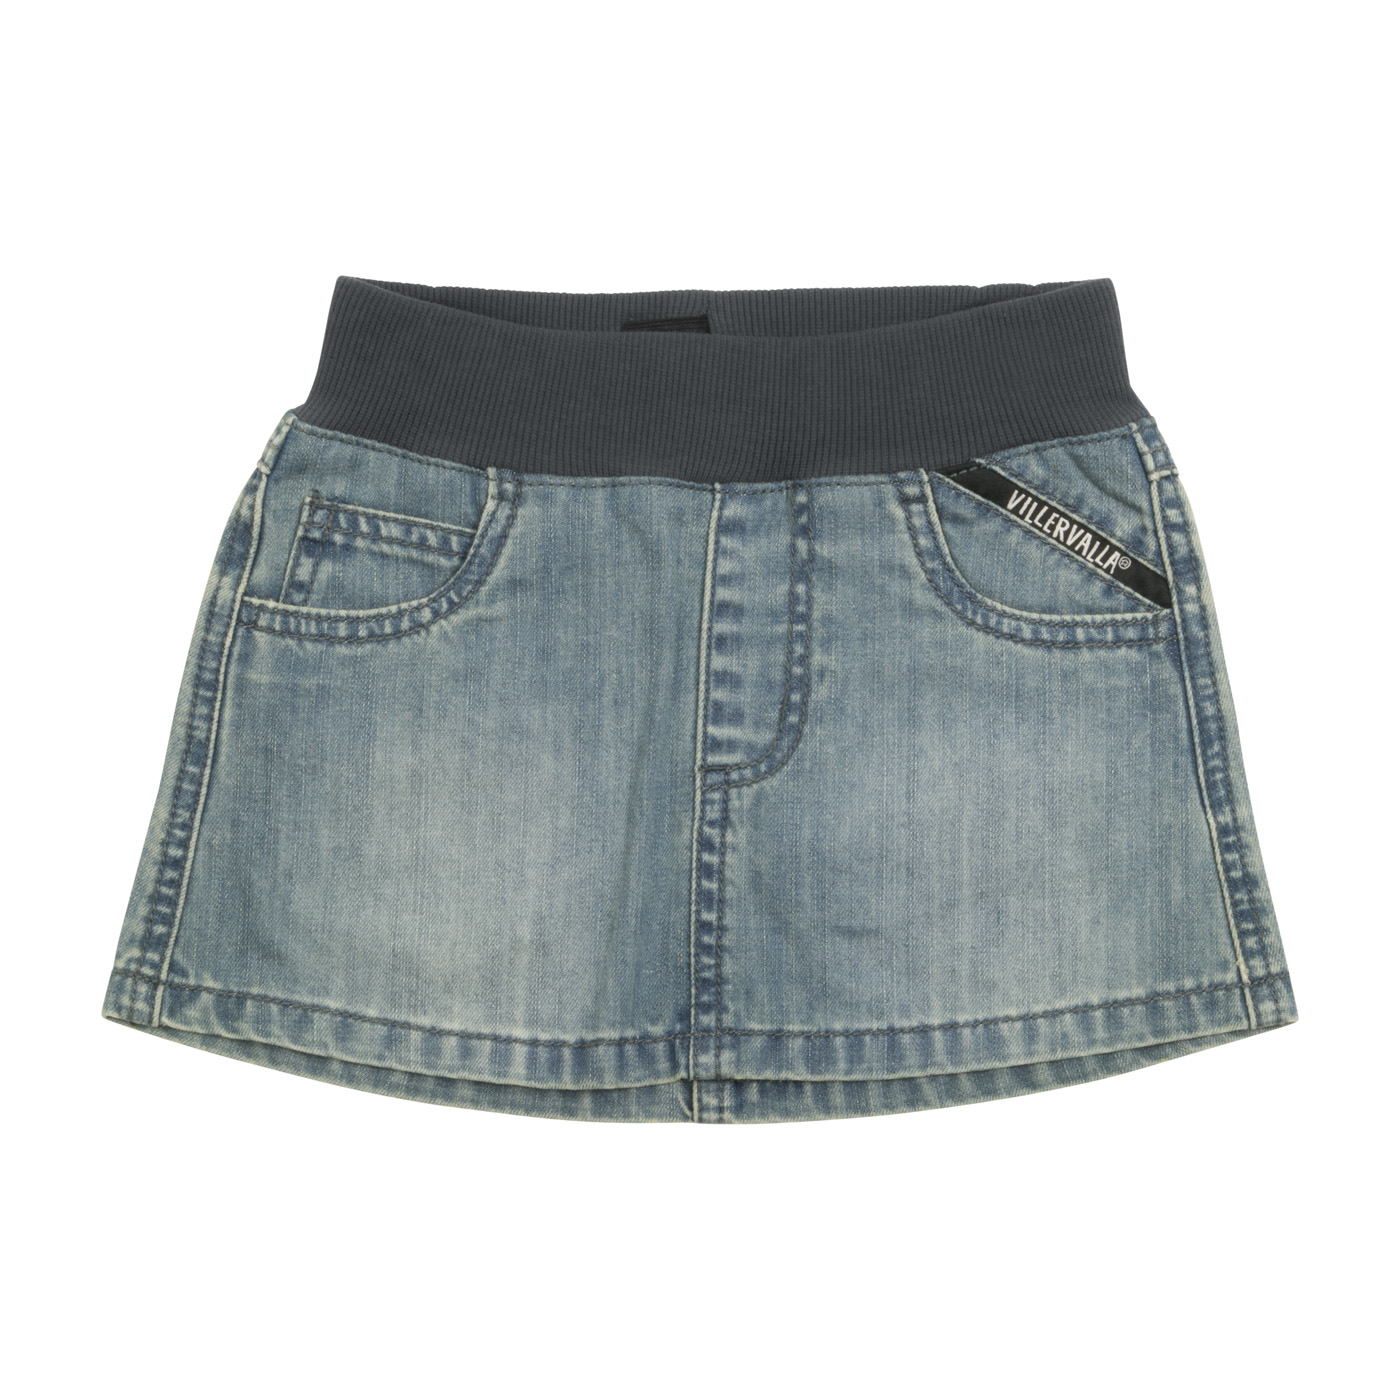 Lee Solid Blue Denim Skirt Size 14 - 57% off | thredUP